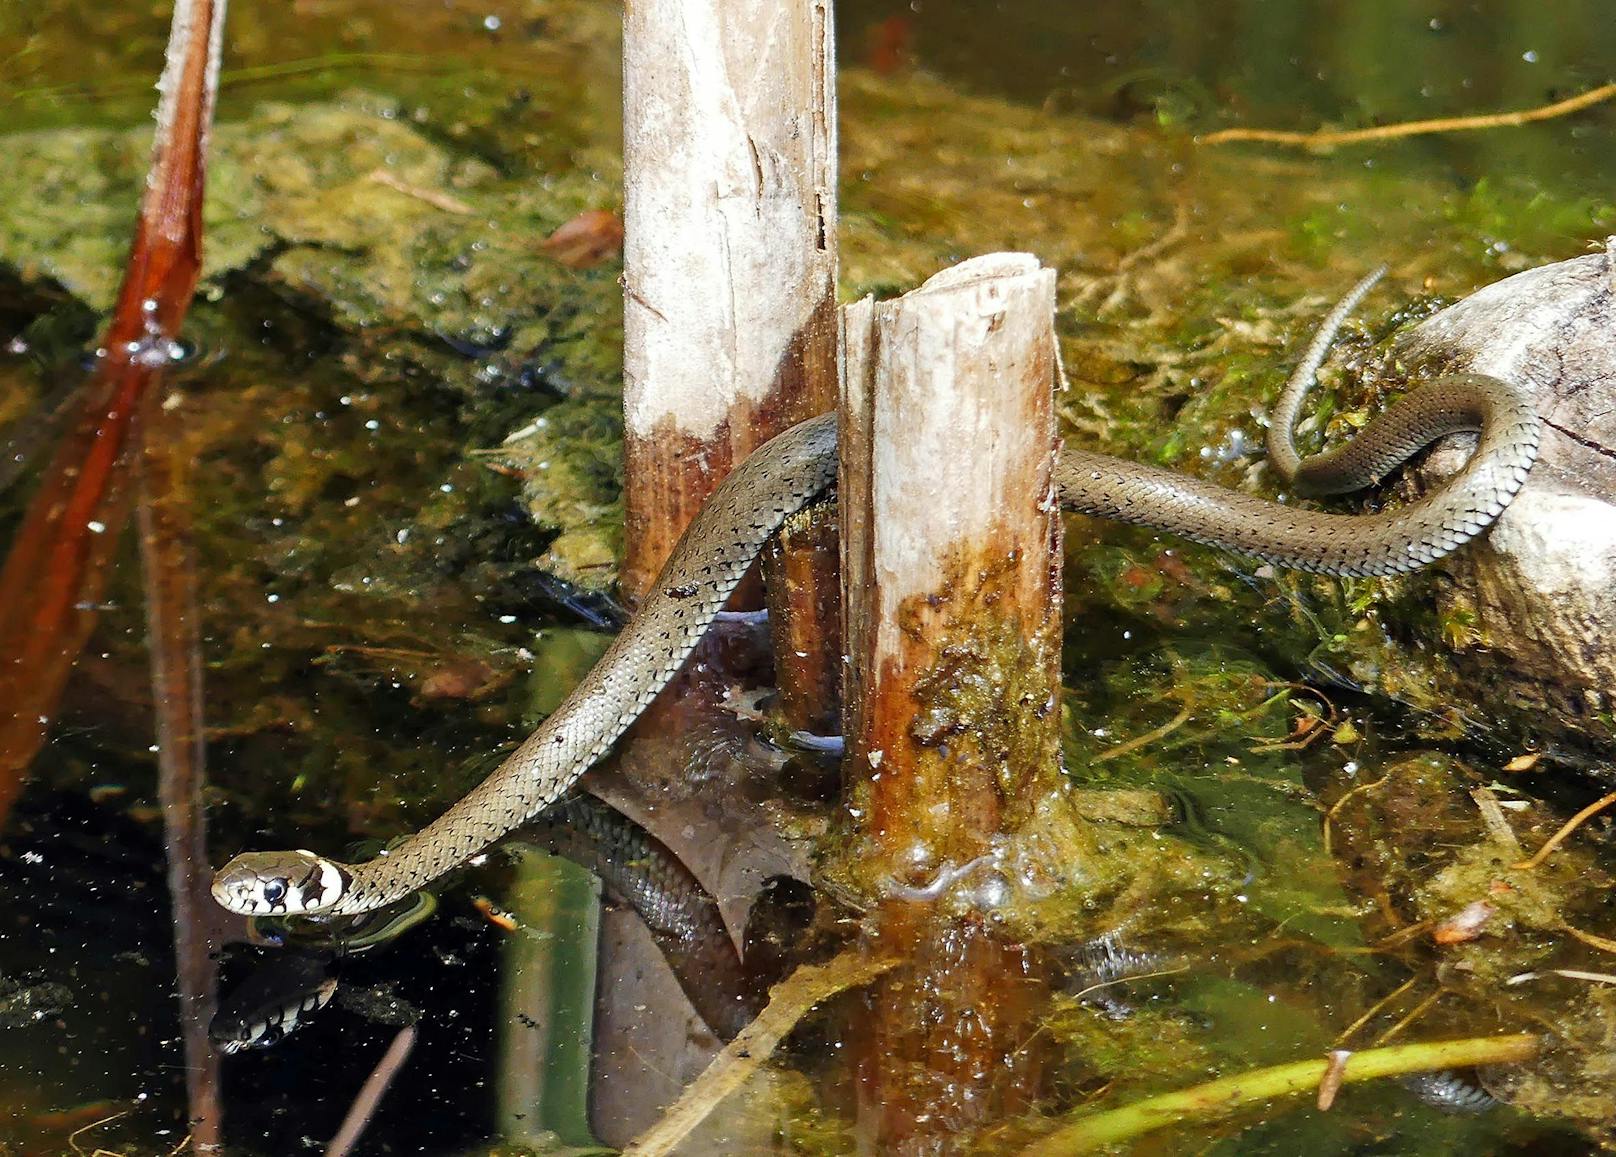 Die <strong>Ringelnatter</strong> ist die häufigste Schlange Österreichs und stellt sich bei Gefahr sogar tot. Sie jagt sowohl im Wasser als auch am Land und man trifft sie auch bei Gartenteichen gerne an.